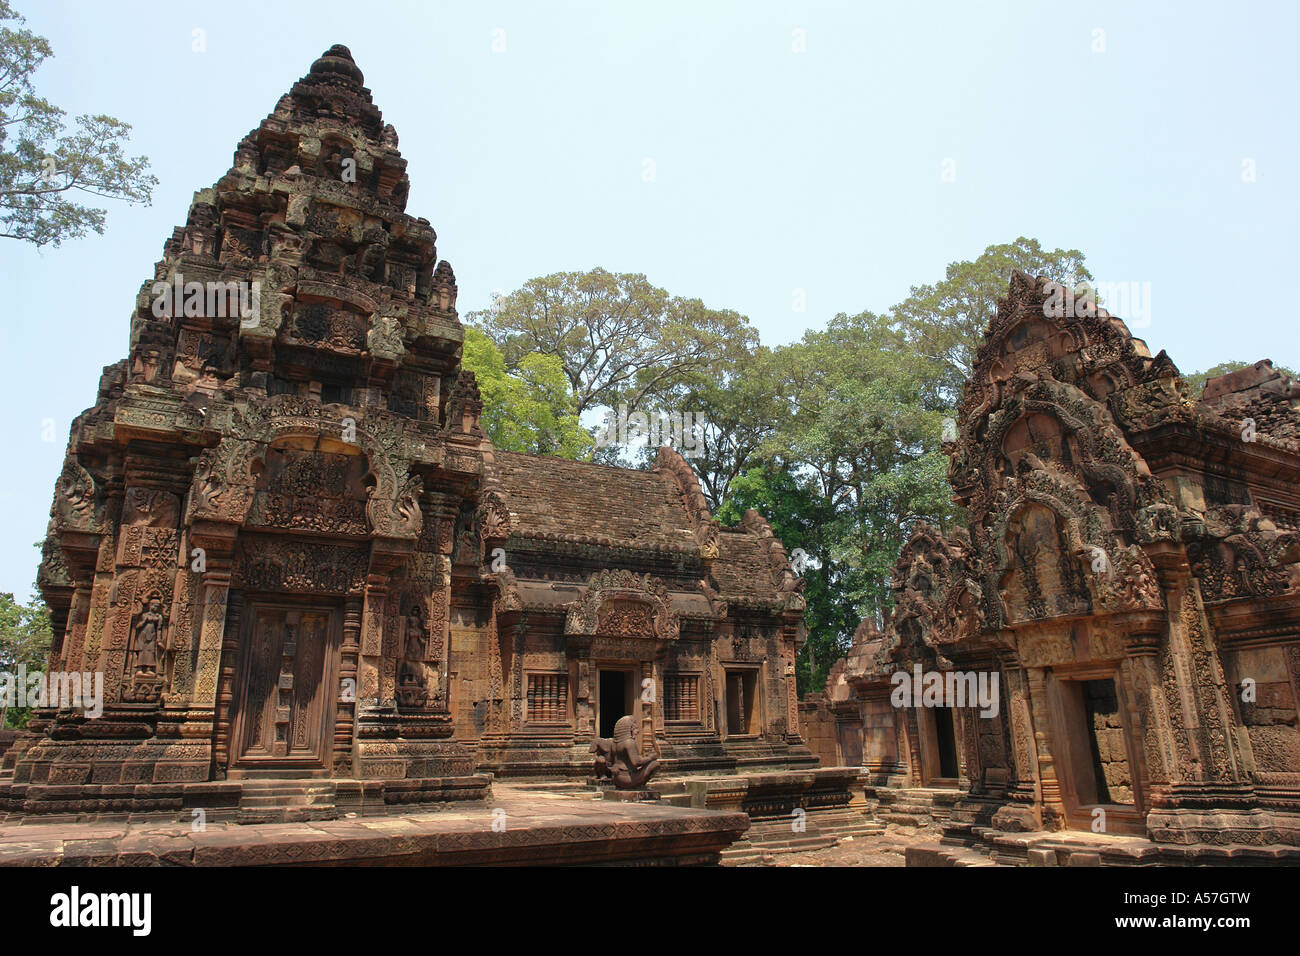 Painet je2269 Kambodscha Banteay Srei Tempel Angkor 2006 Tourismus Architektur Land entwickeln Nation wirtschaftlich weniger Stockfoto